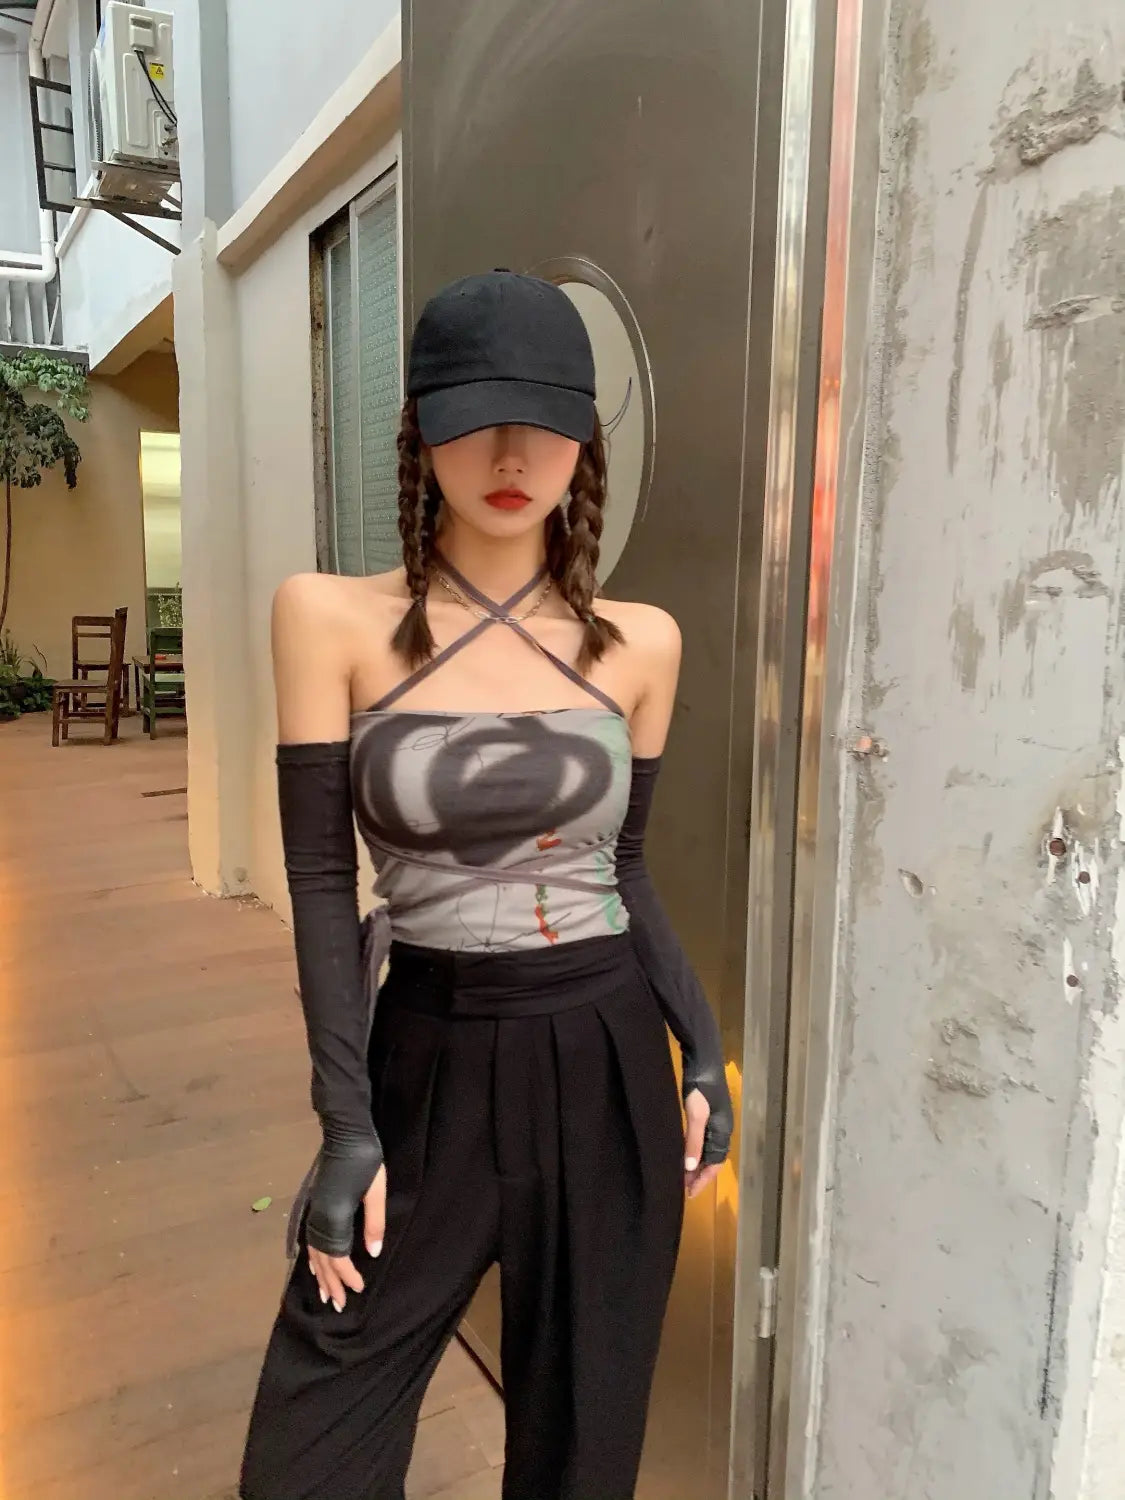 Lovemi - Women’S Summer Short Short Sling Vest